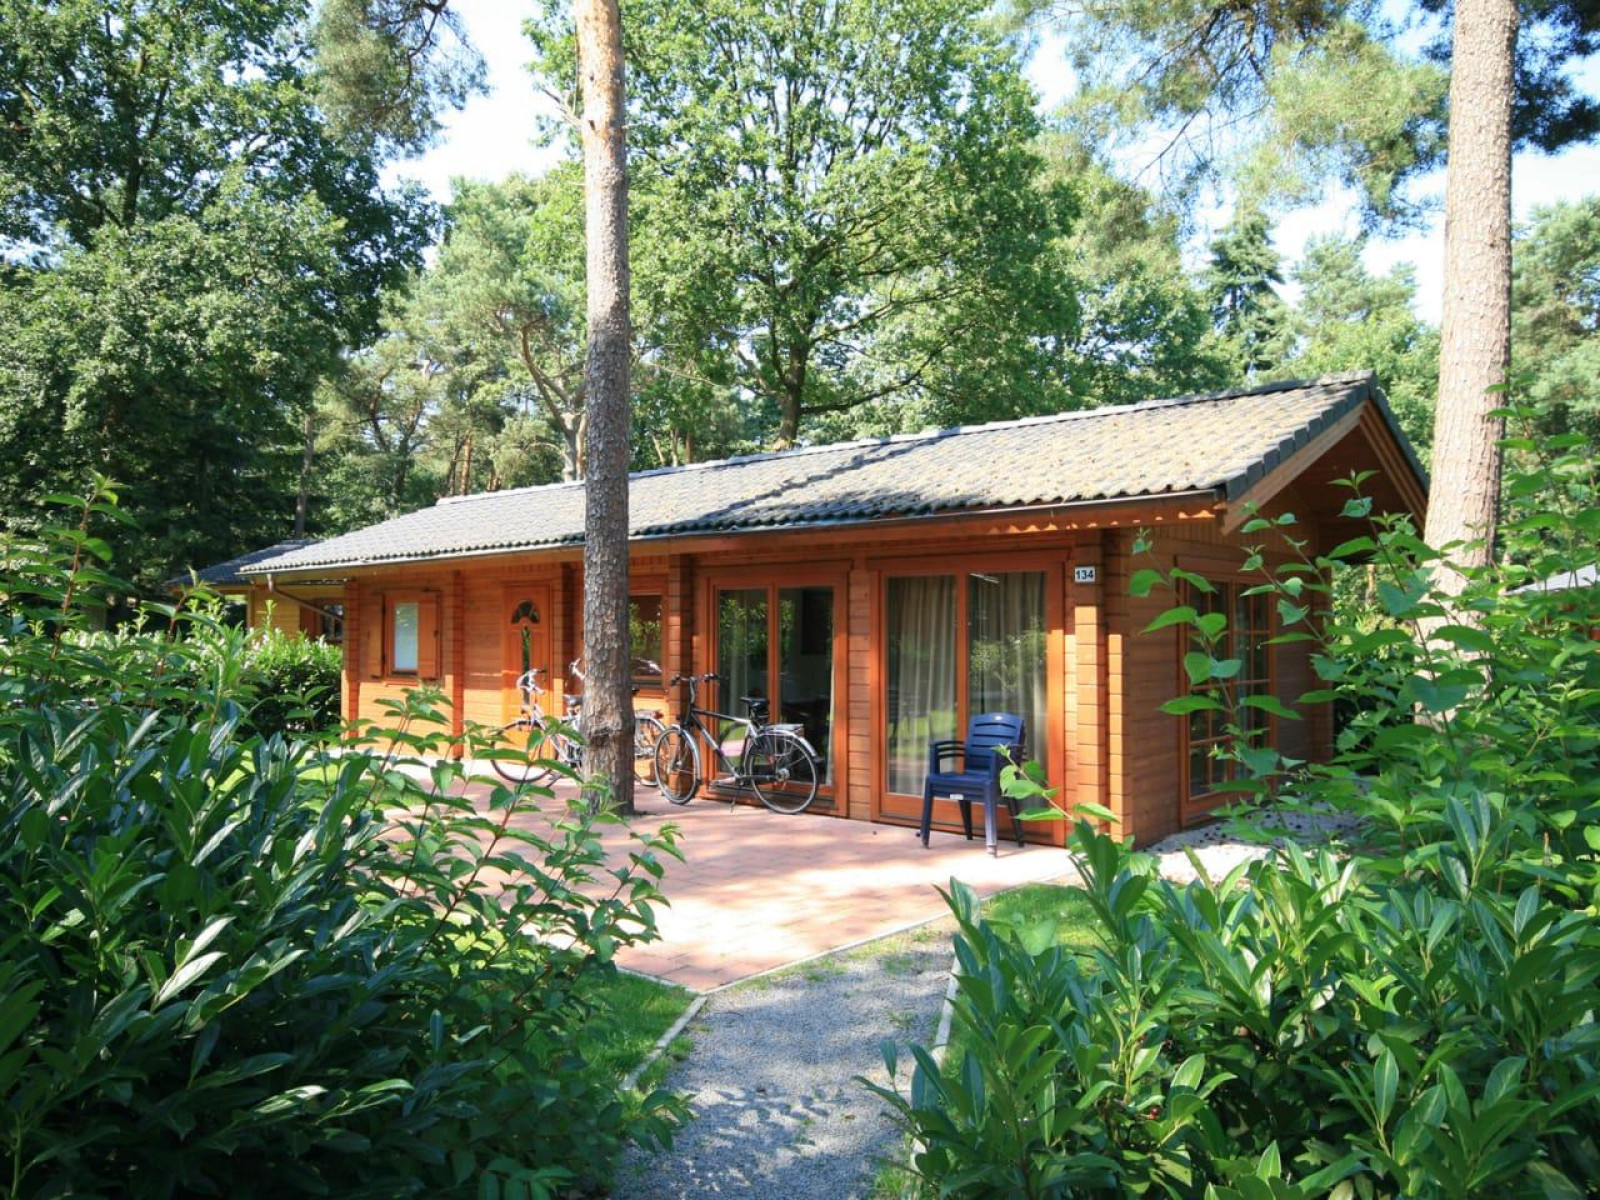 Heerlijkehuisjes.nl Luxe 4 persoons vakantiehuis gelegen op prachtig vakantiepark in Zuid-Limburg - Nederland - Europa - Brunssum